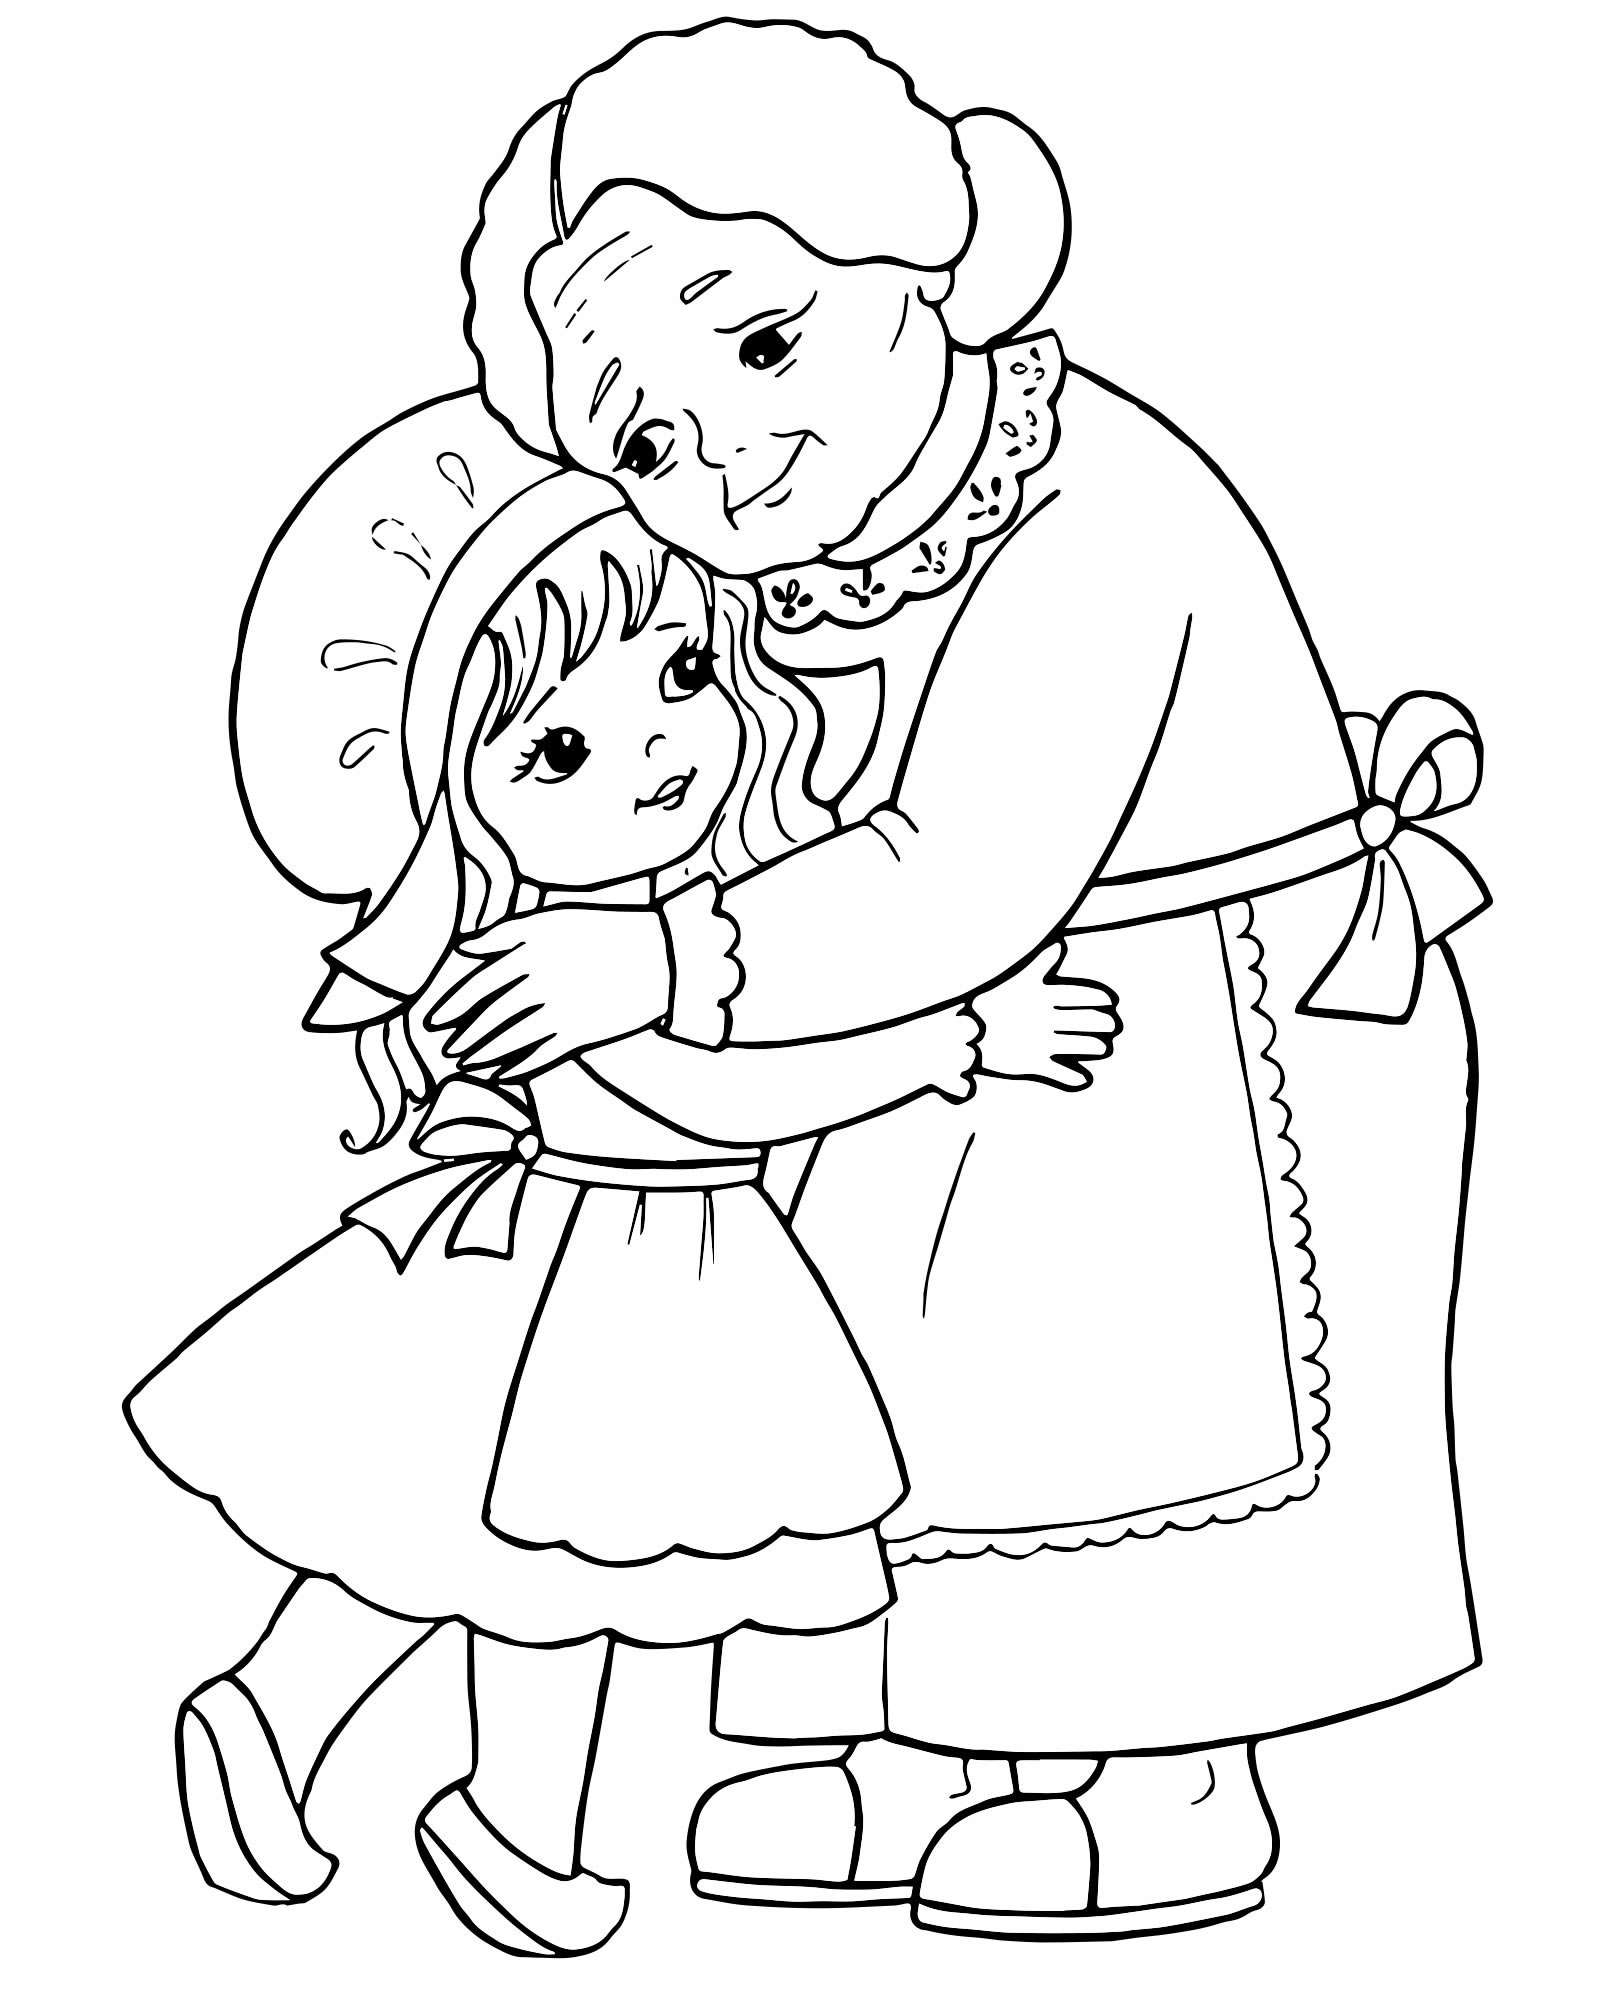 Красная Шапочка и бабушка — раскраска для детей. Распечатать бесплатно.